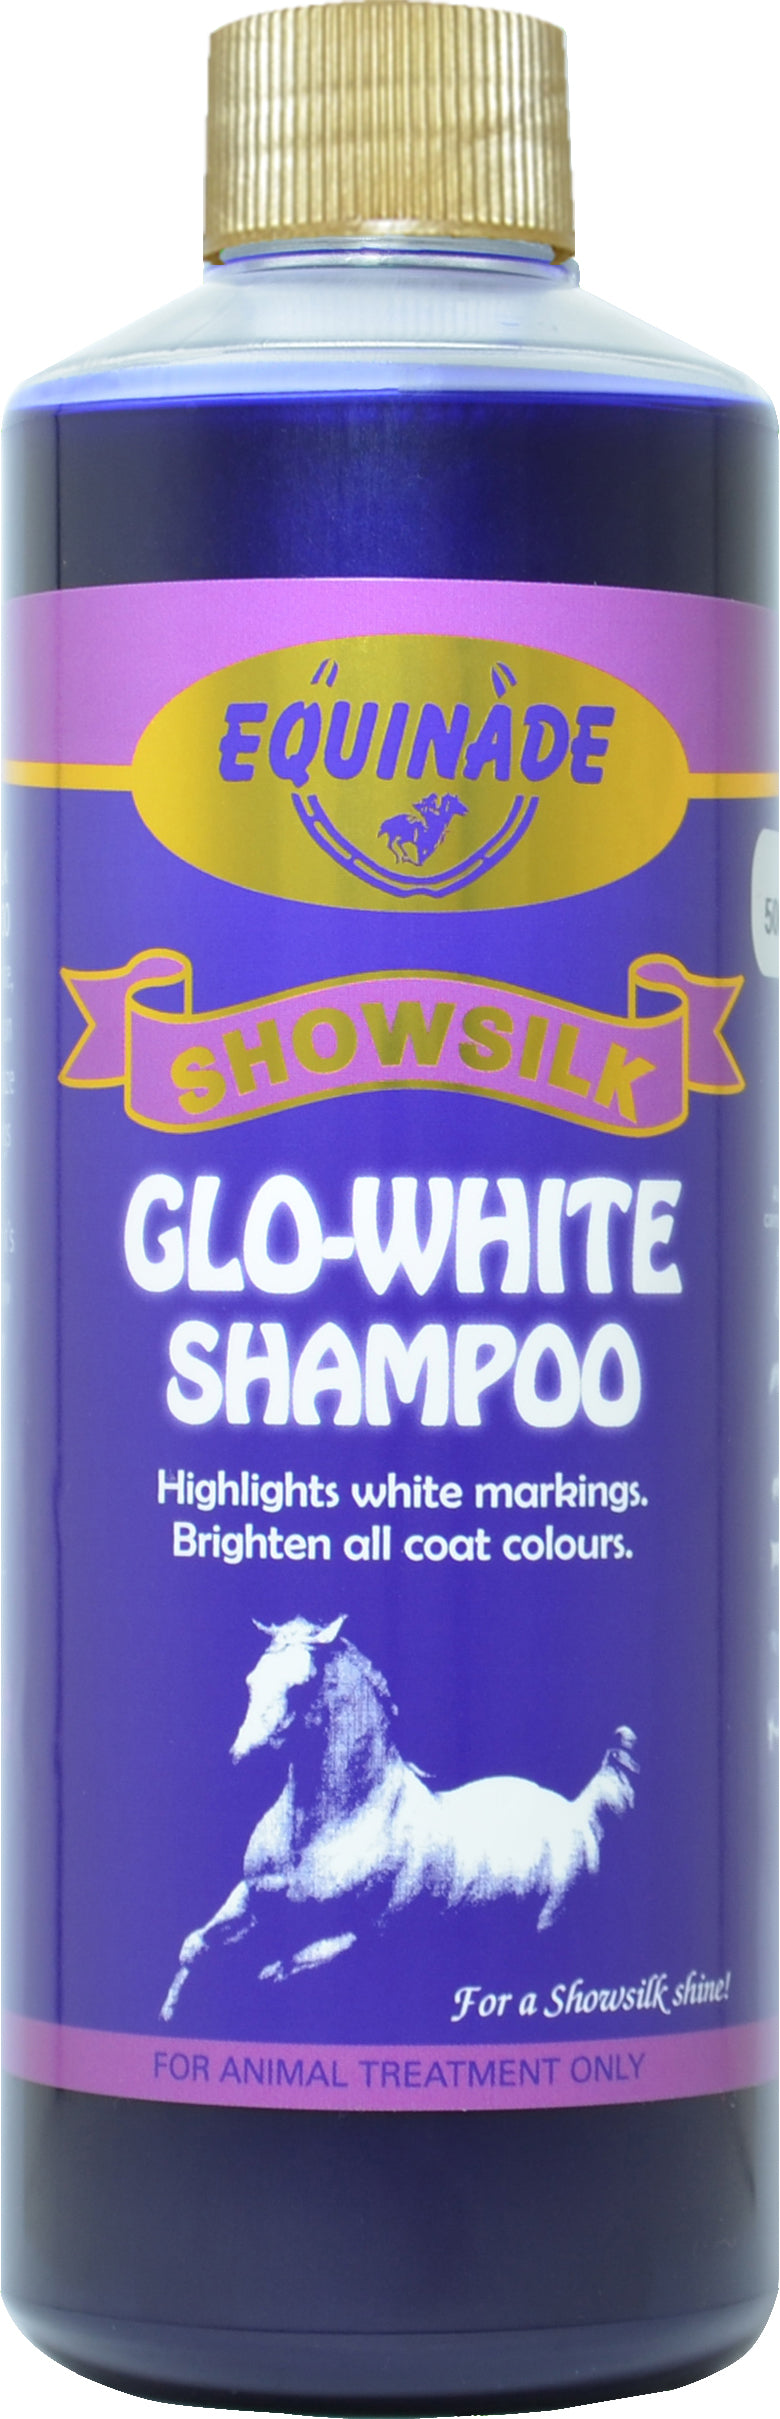 GLO-WHITE SHAMPOO